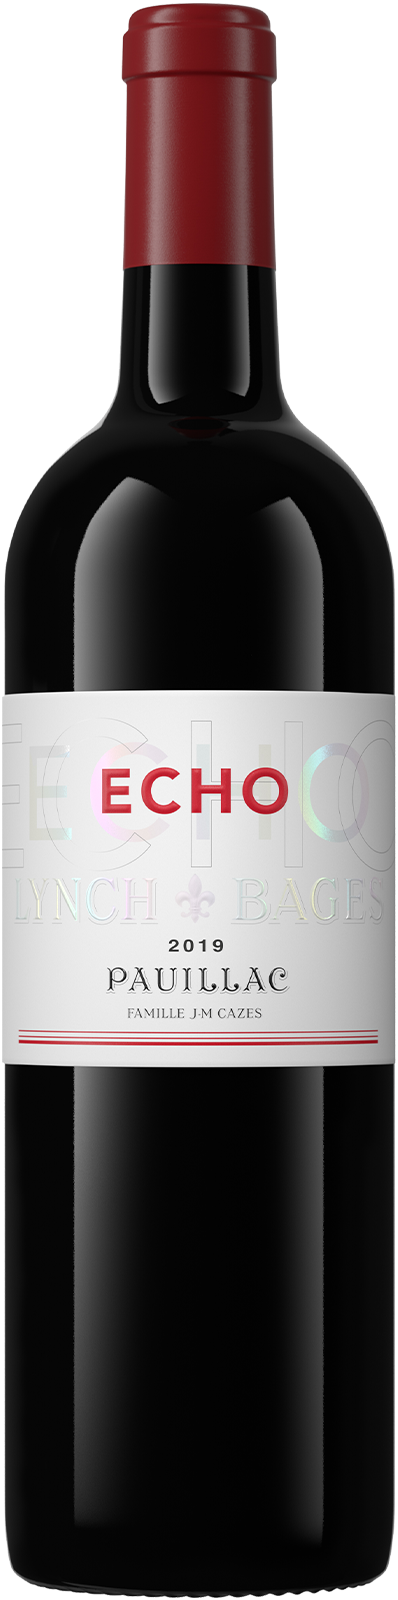 Echo de Lynch Bages 2019 (Vinous: 90)